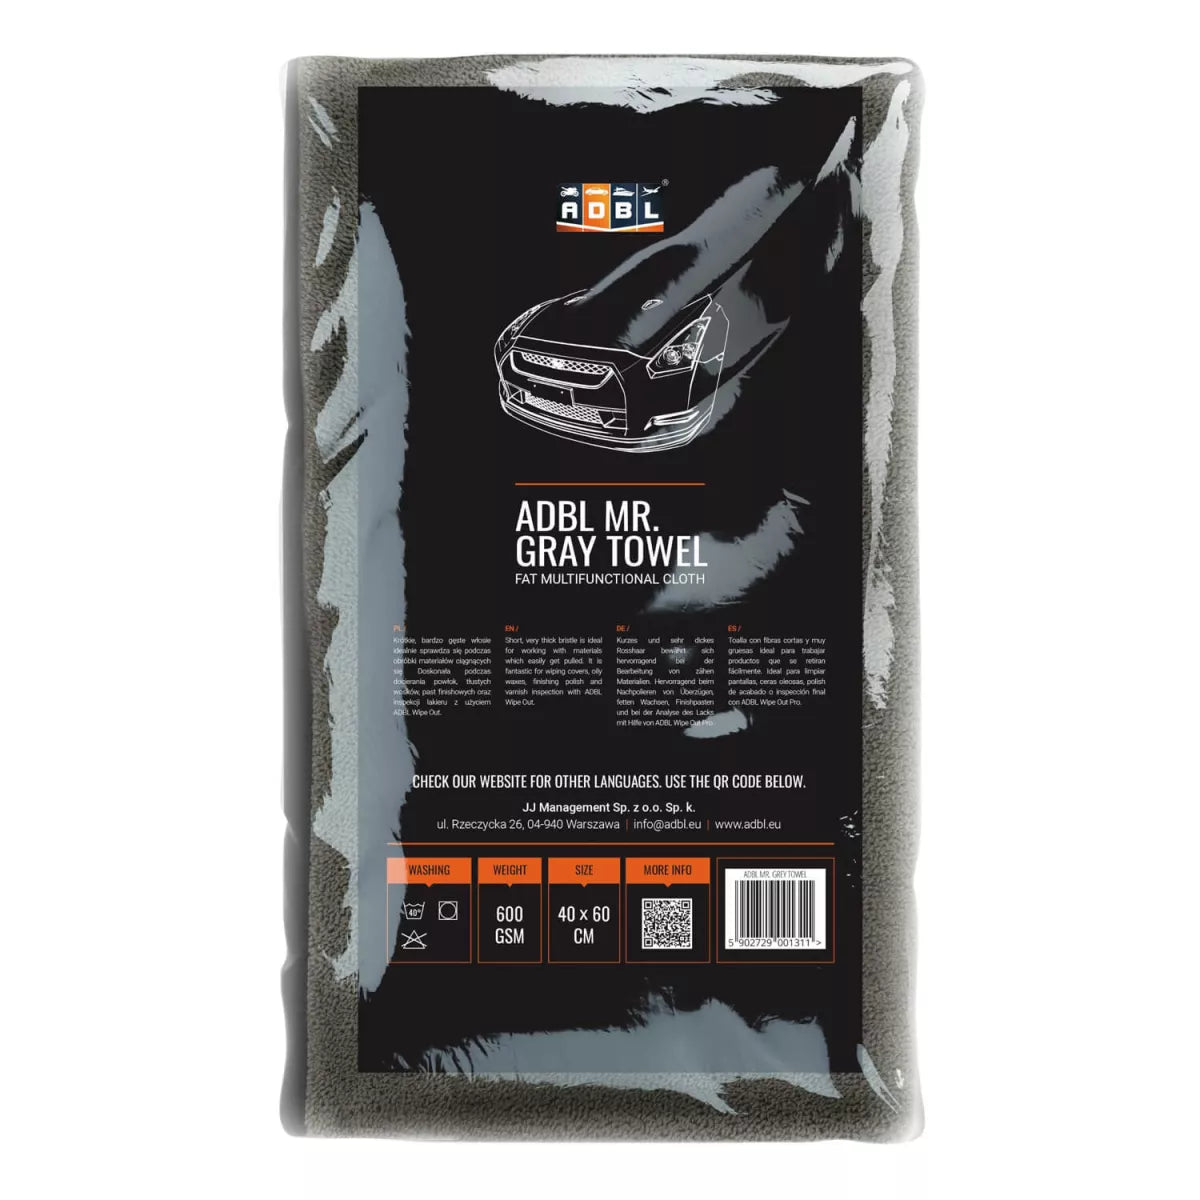 ADBL Mr. Gray Towel Poliertuch 600GSM 40×60 -  2306